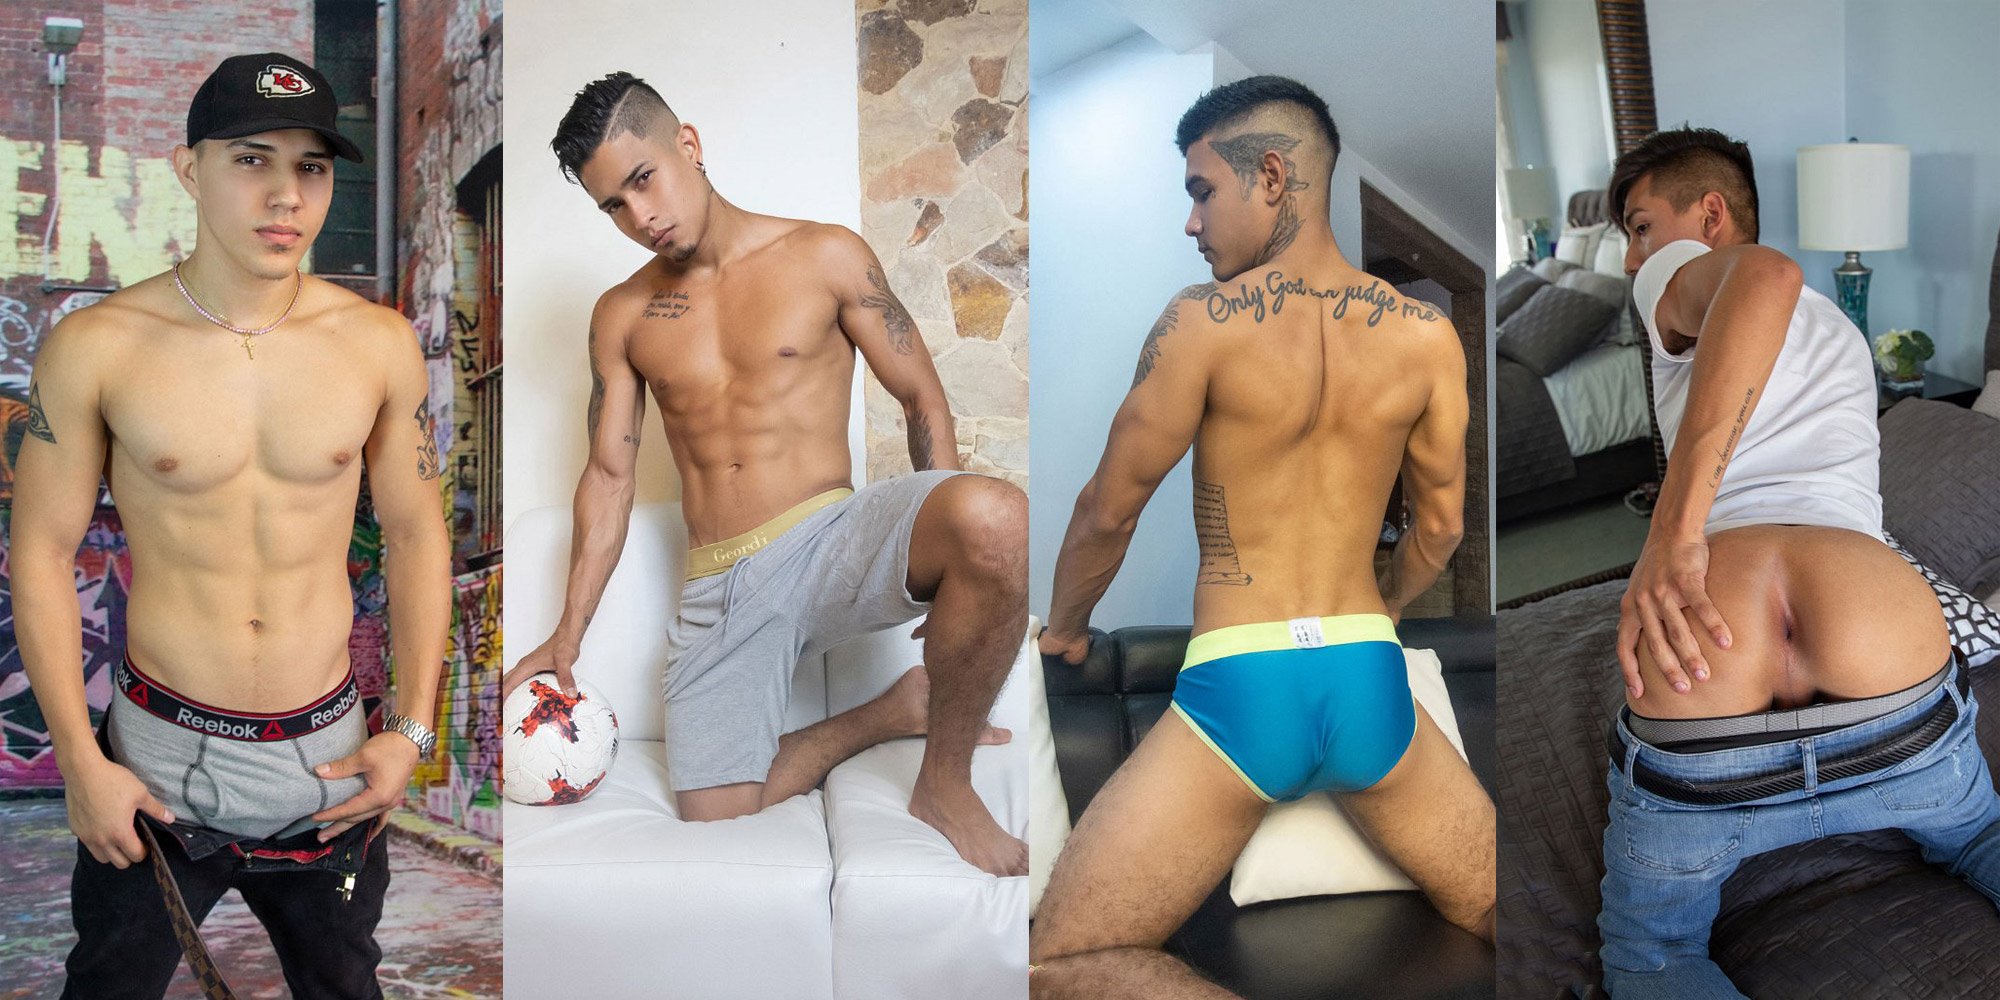 Latinboyz models